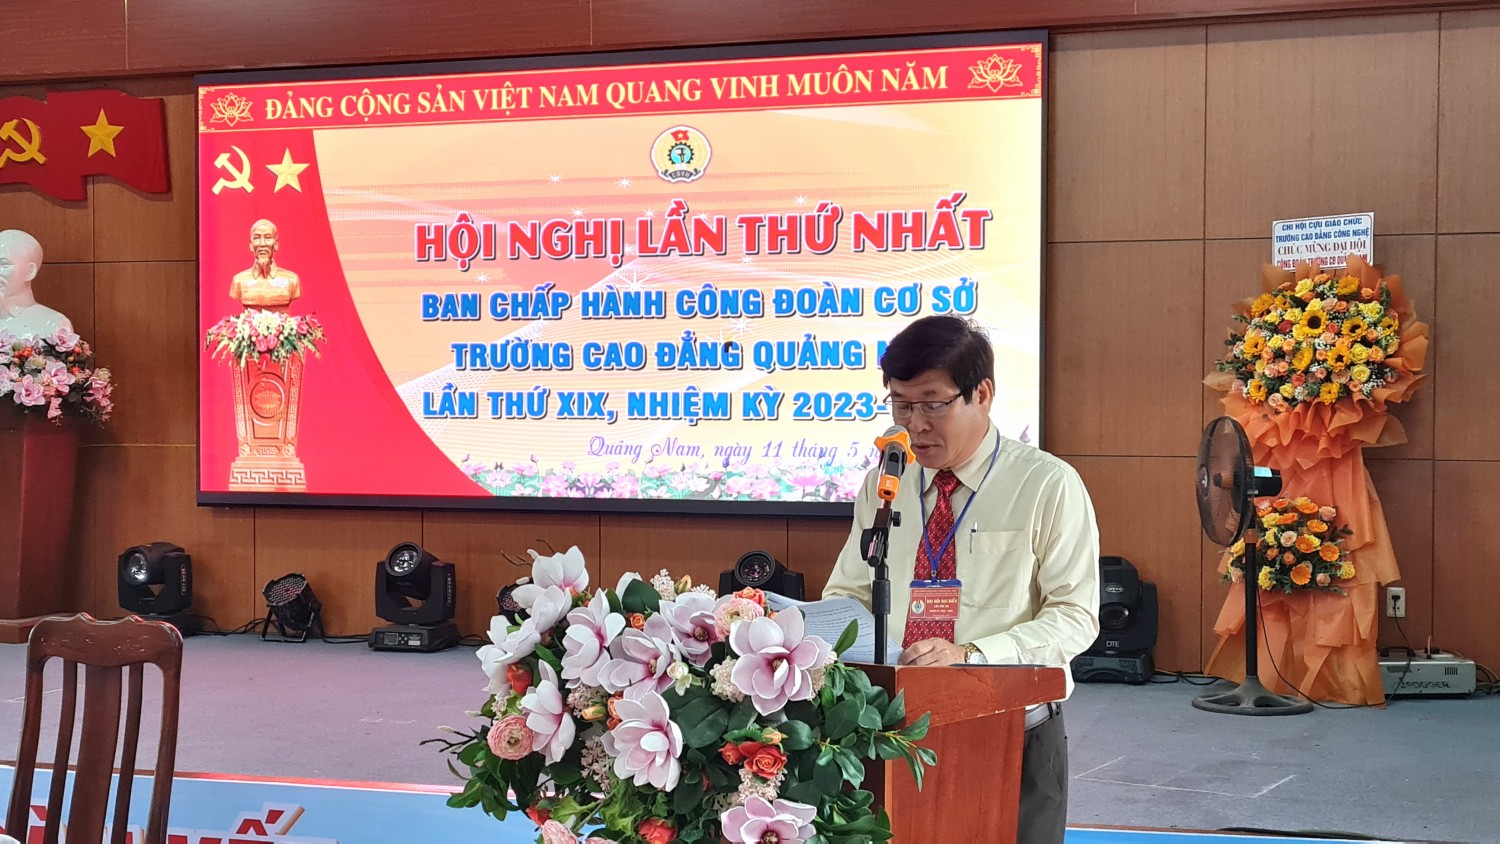 Hội nghị lần thứ nhất BCH Công đoàn cơ sở Trường Cao đẳng Quảng Nam lần thứ XIX, nhiệm kỳ 2023-2028